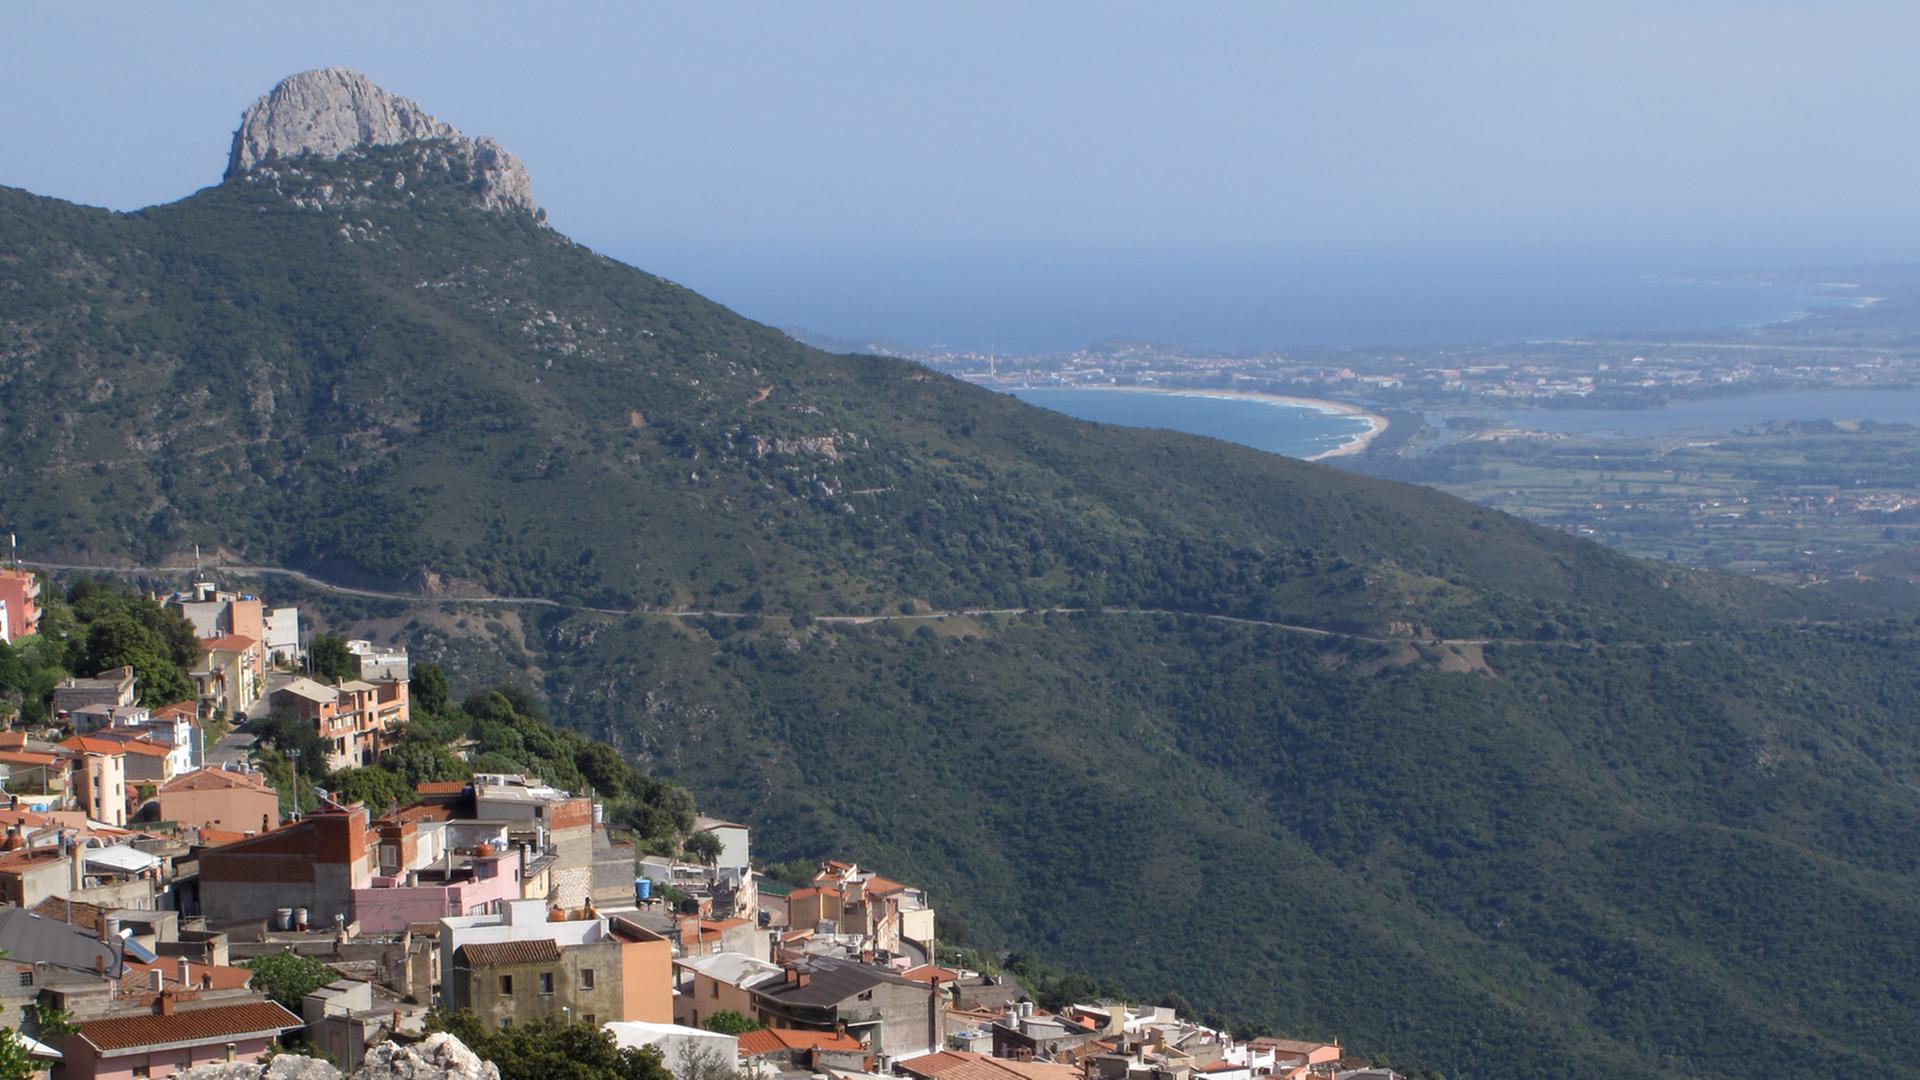 Blick auf die an einem Berghang gelegene Ortschaft Baunei in der Ogliastra auf der italienischen Insel Sardinien (Aufnahme vom 20.05.2010).